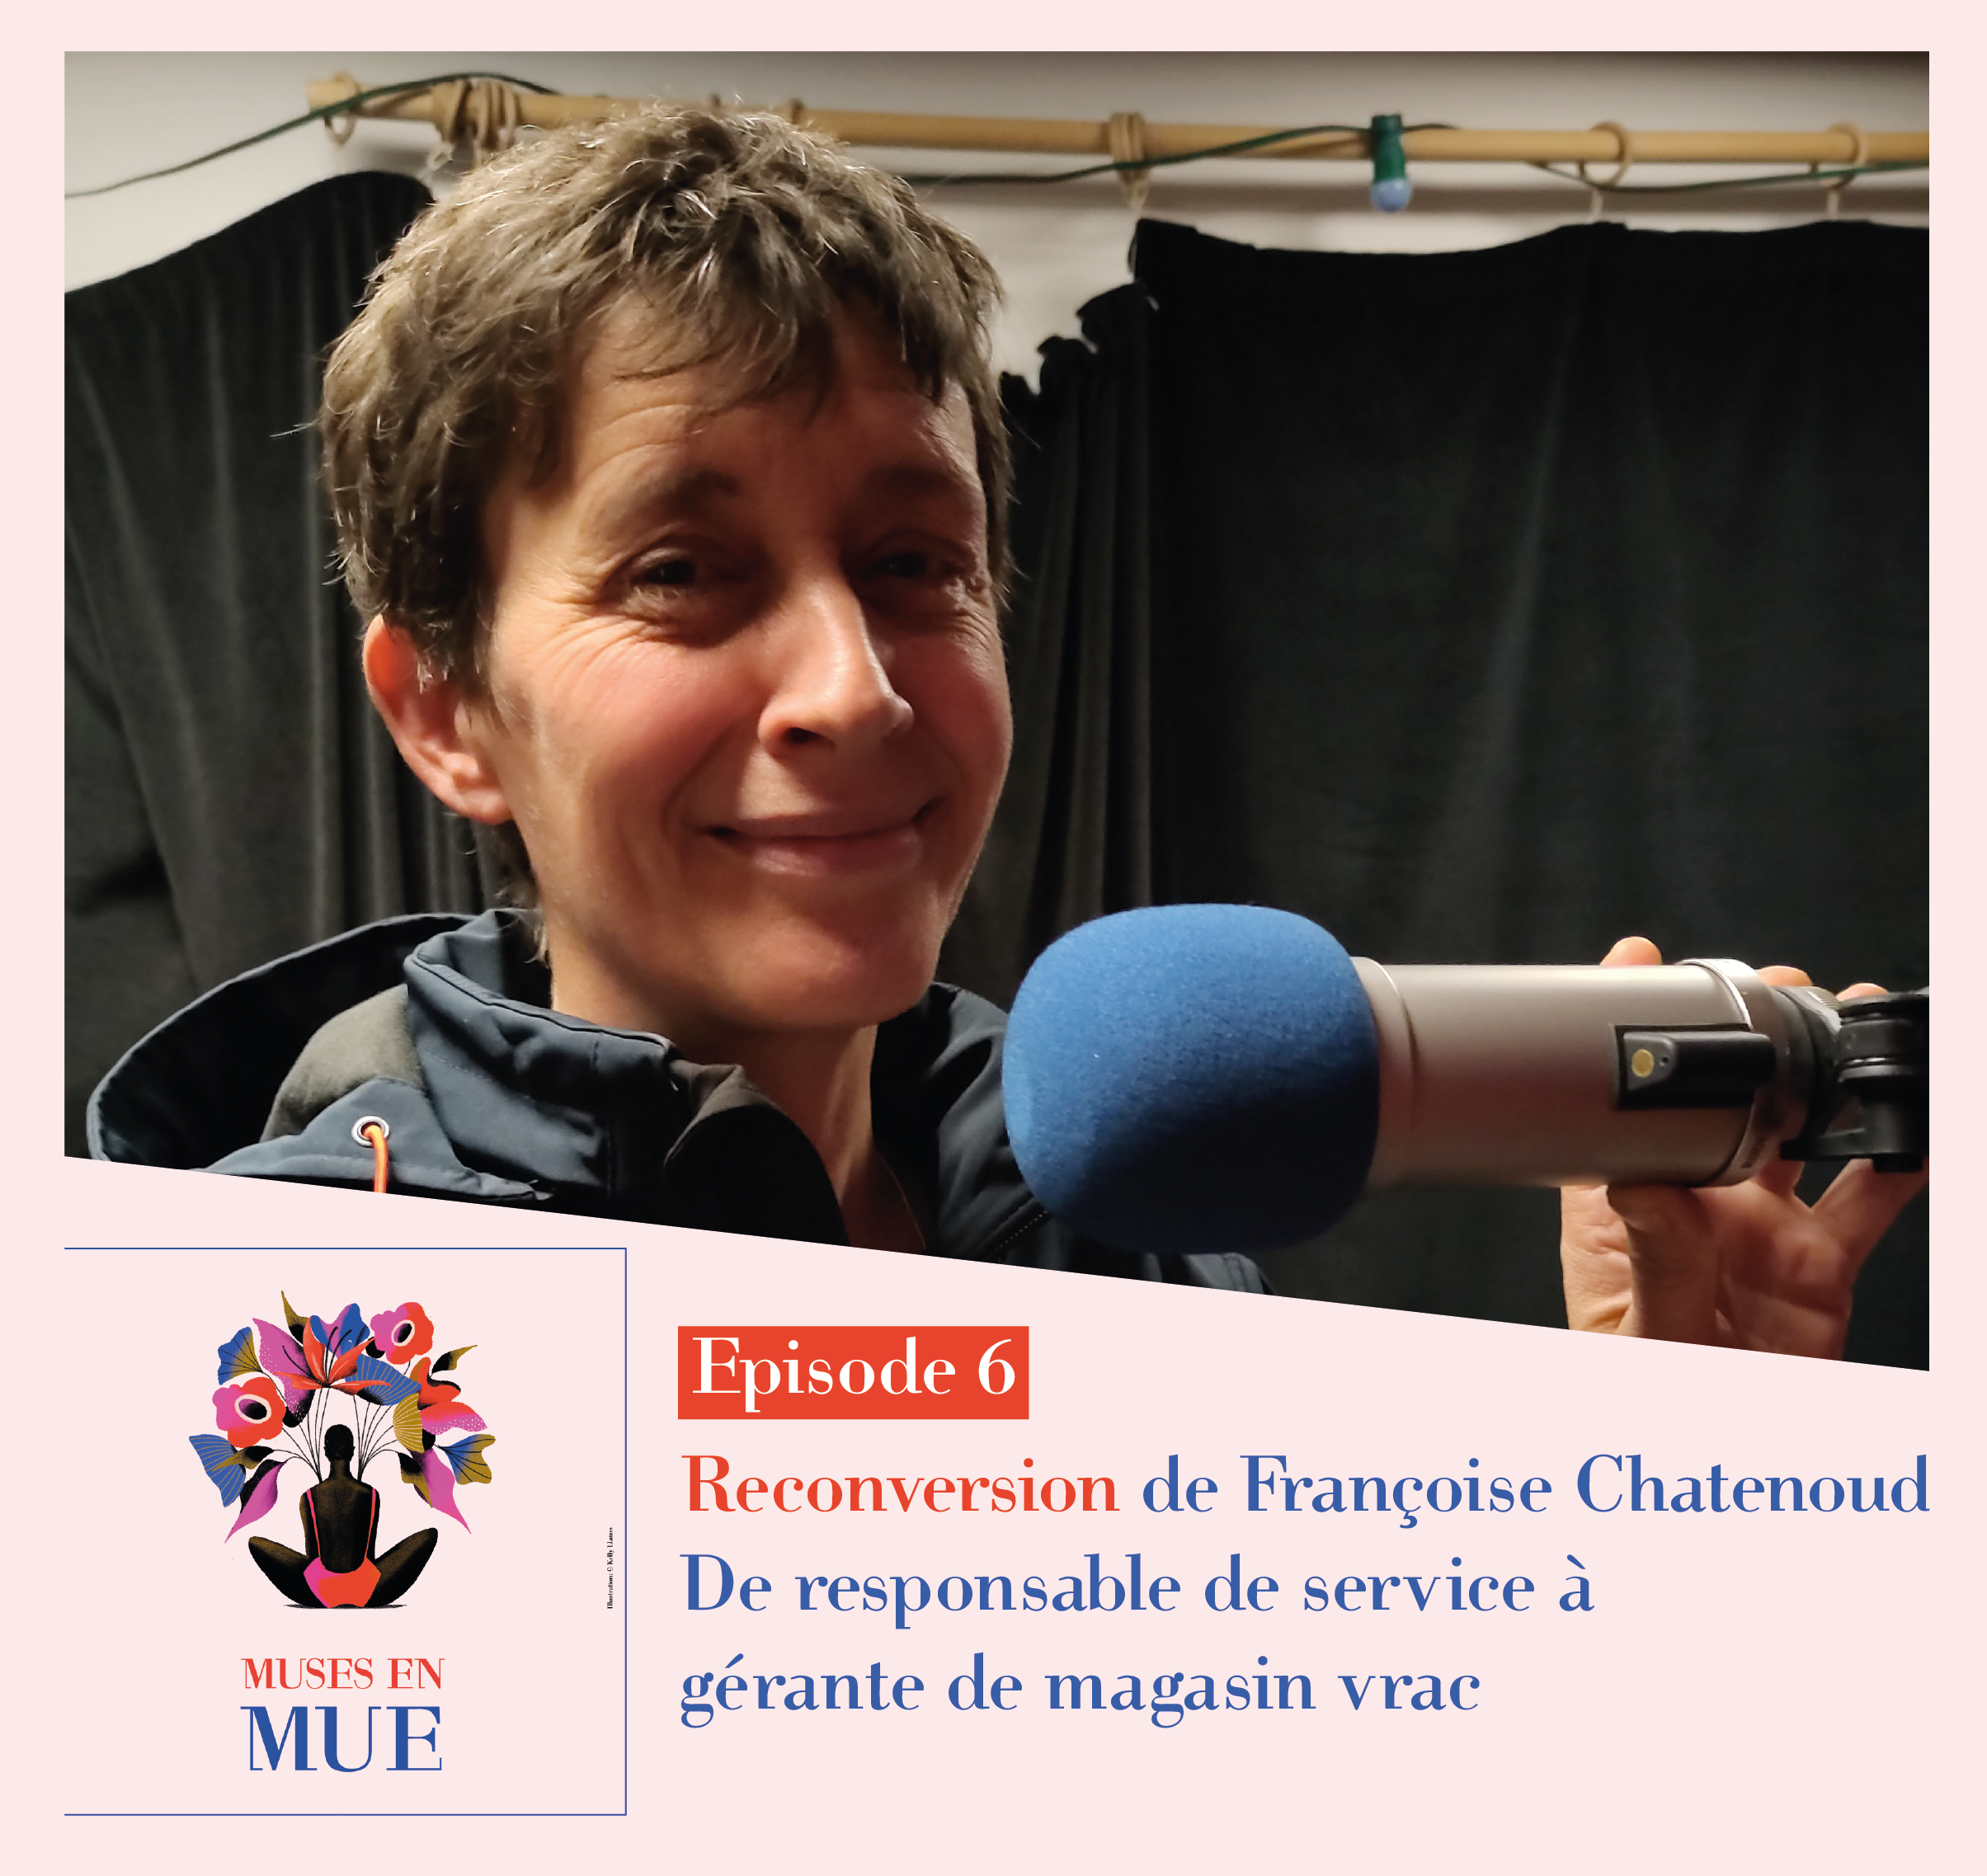 MUSES EN MUE – Episode 6 avec Françoise Chatenoud